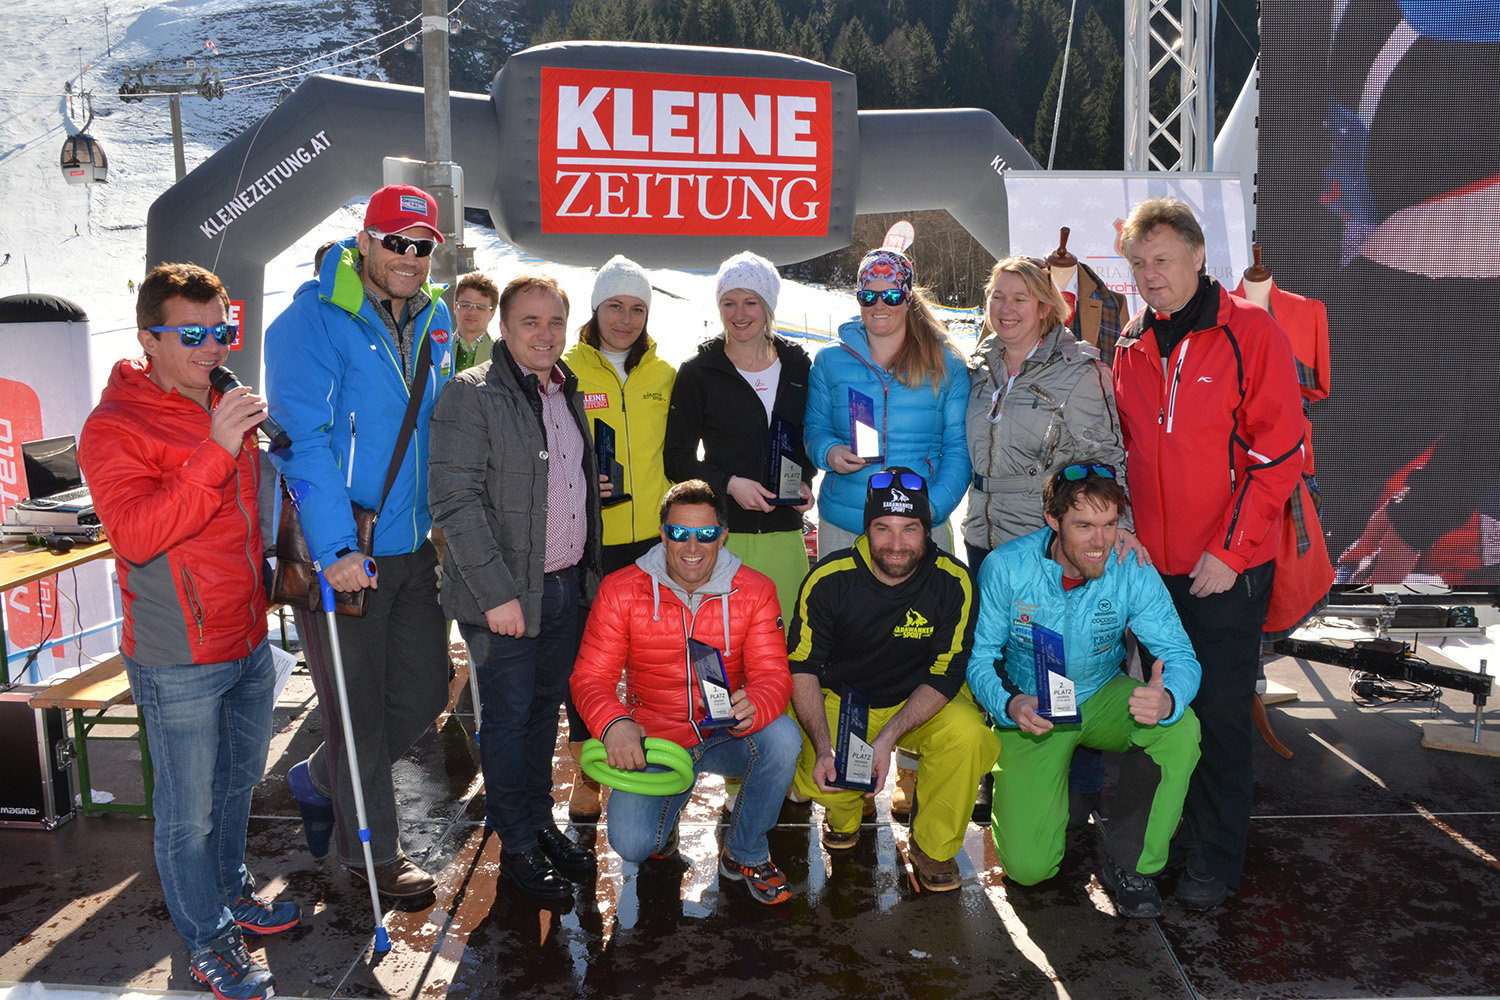 A 6. Schlag das Ass - A világ leghosszabb sífutóversenye büszke győztesei trófeáikkal és a sérült házigazdával Armin Assingerrel